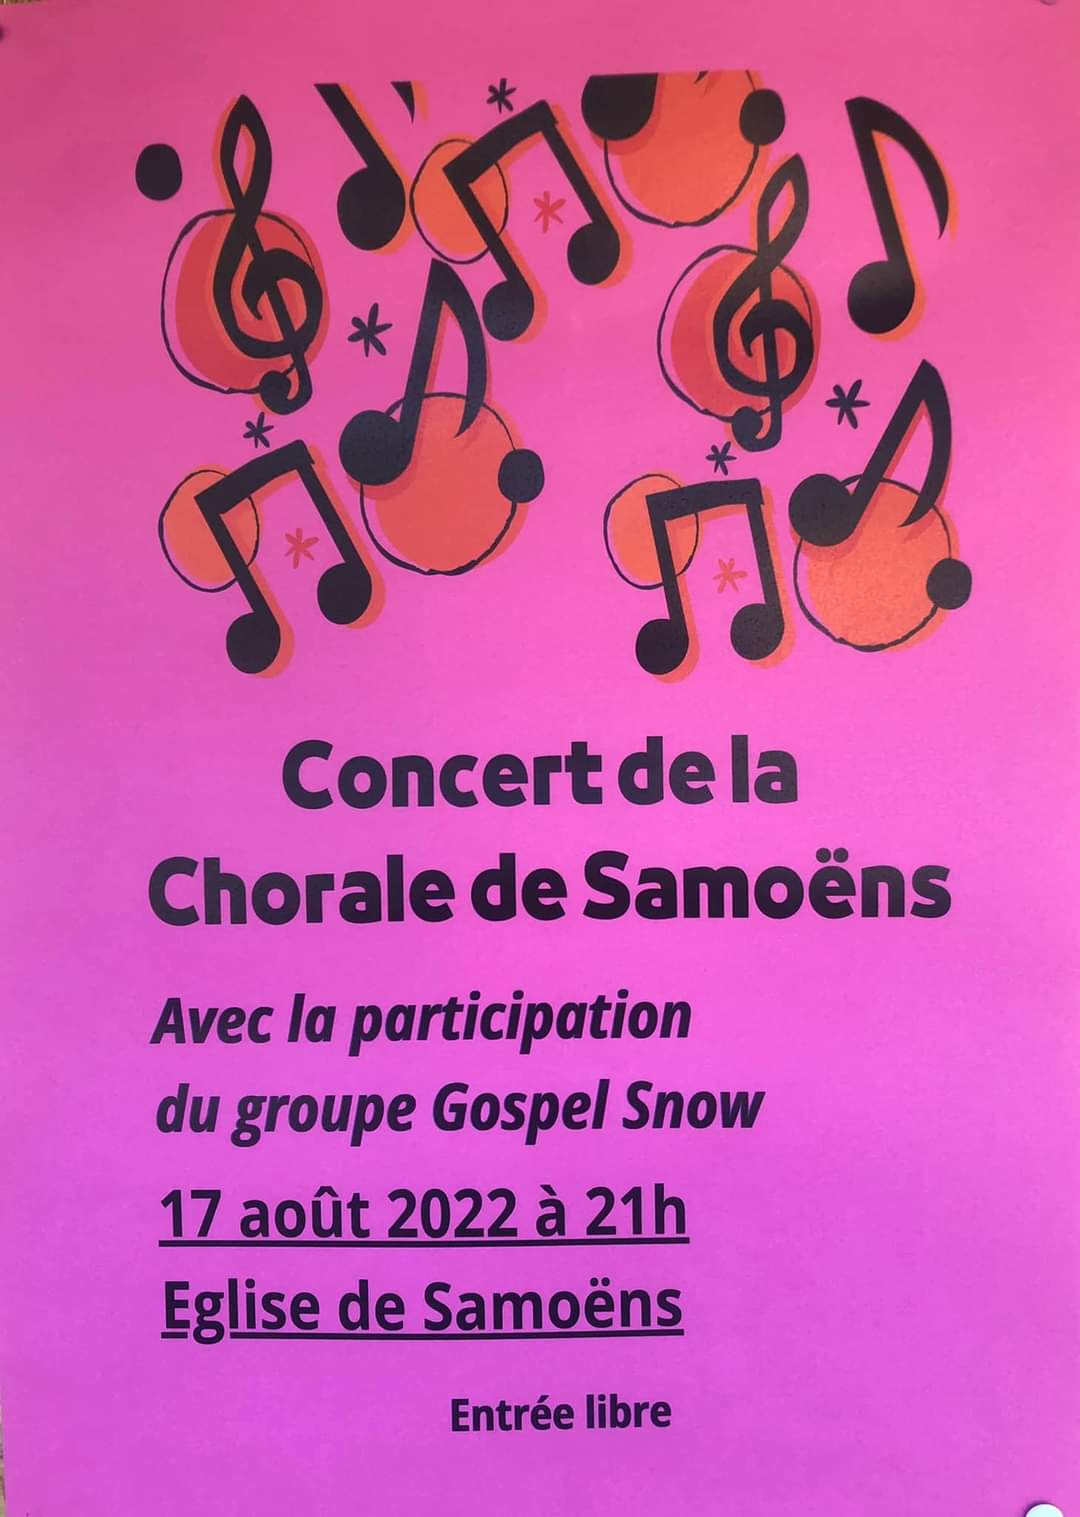 Concert de la chorale de Samoëns le mercredi 17 août 2022